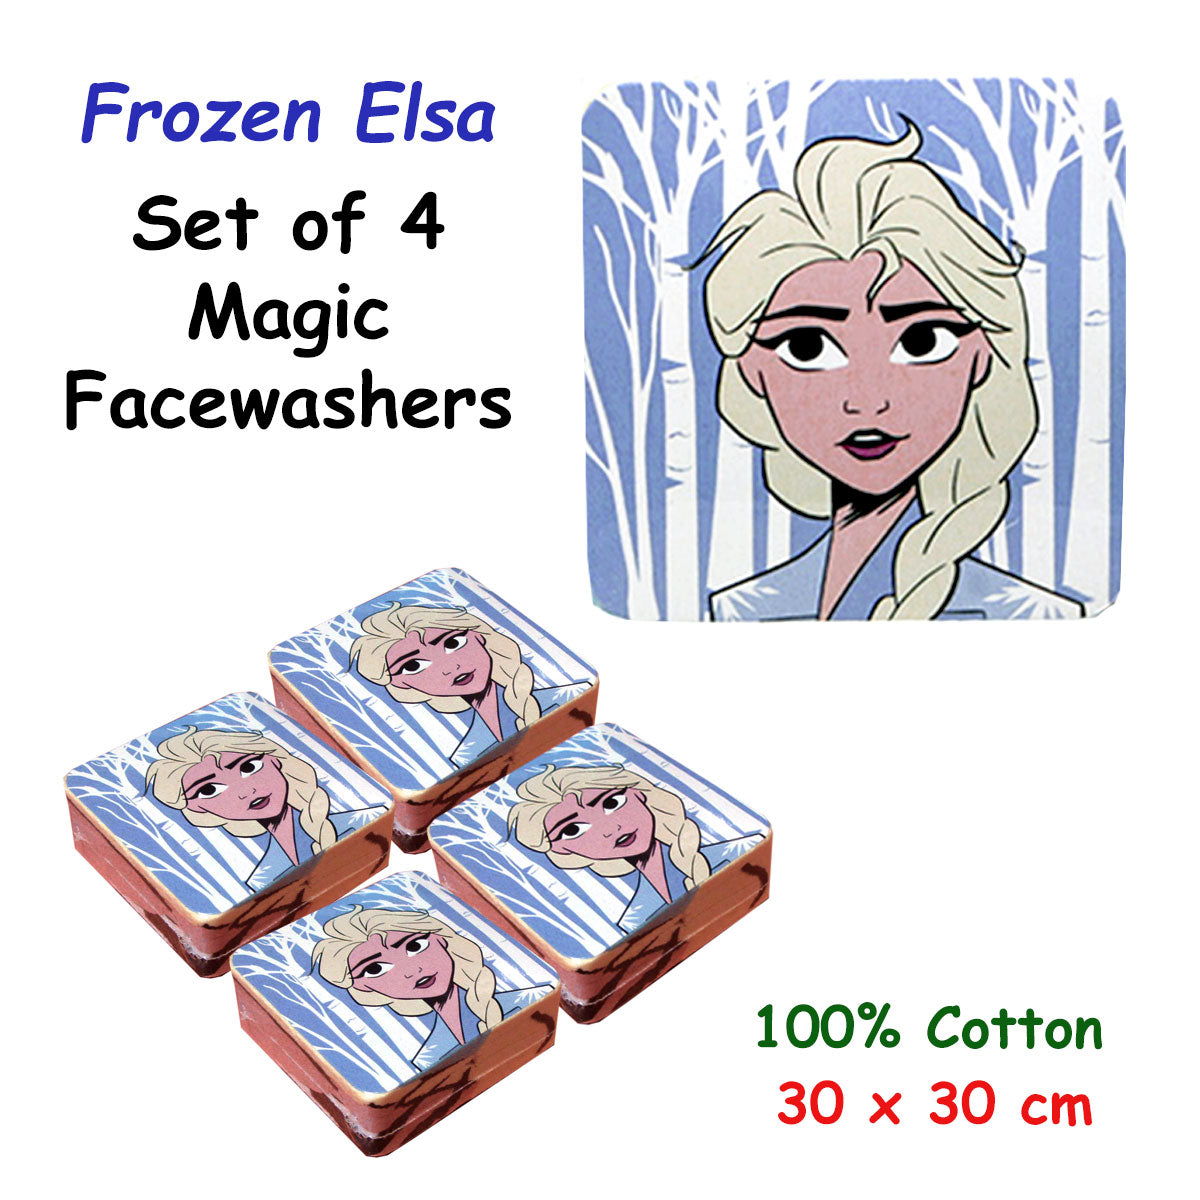 Frozen Elsa Set of 4 Cotton Licensed Magic Facewashers 30 x 30 cm